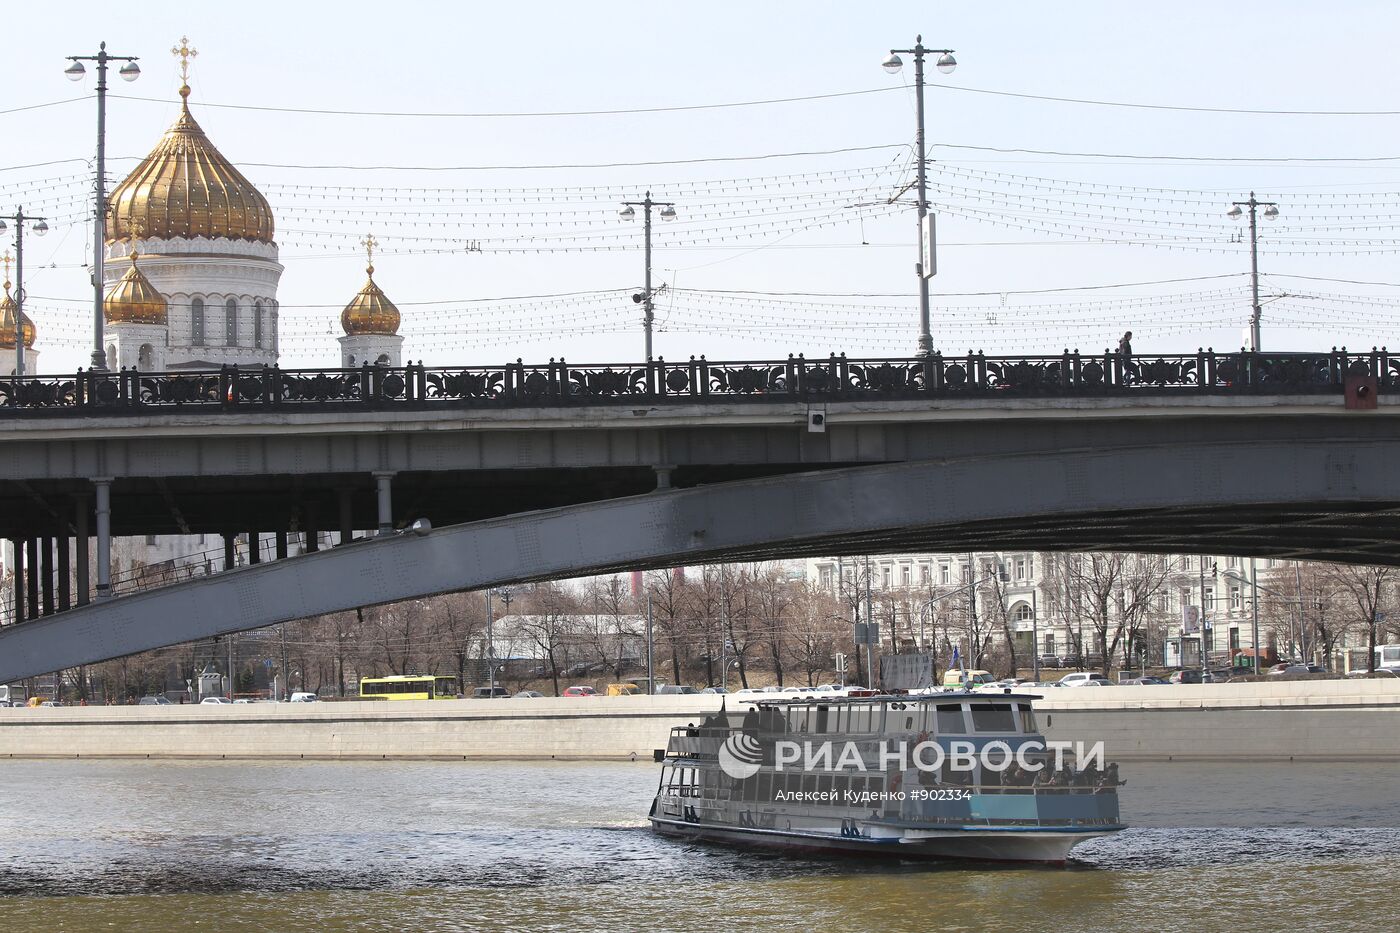 Открытие пассажирской навигации на Москве-реке